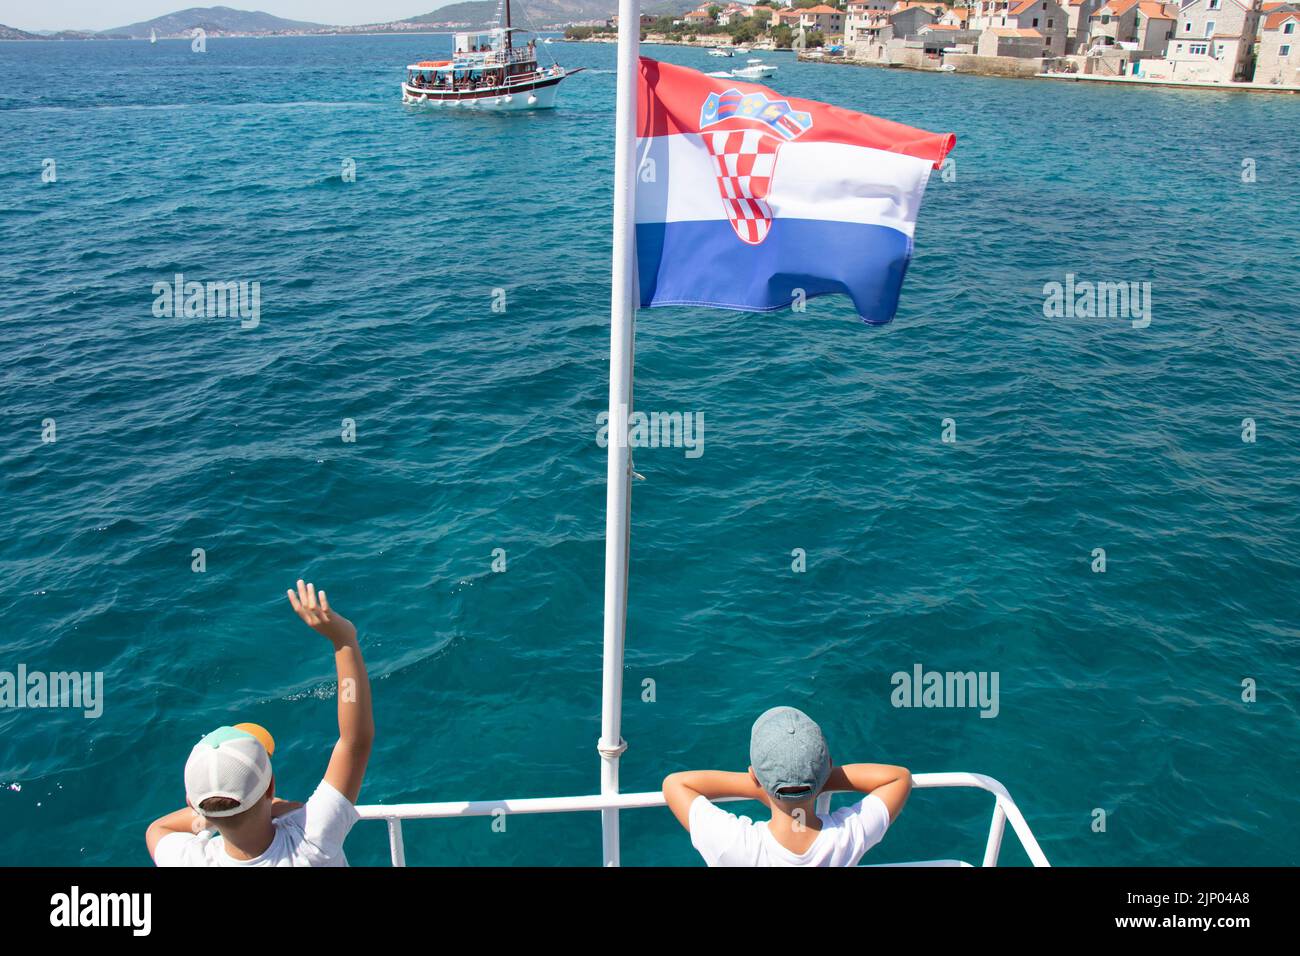 Isola di Prvic, Croazia - 22 luglio 2022: Due ragazzi che sventolano dalla barca con la bandiera croata per tour in barca in escursione giornaliera e la città vecchia di Prvic, posteriore vi Foto Stock